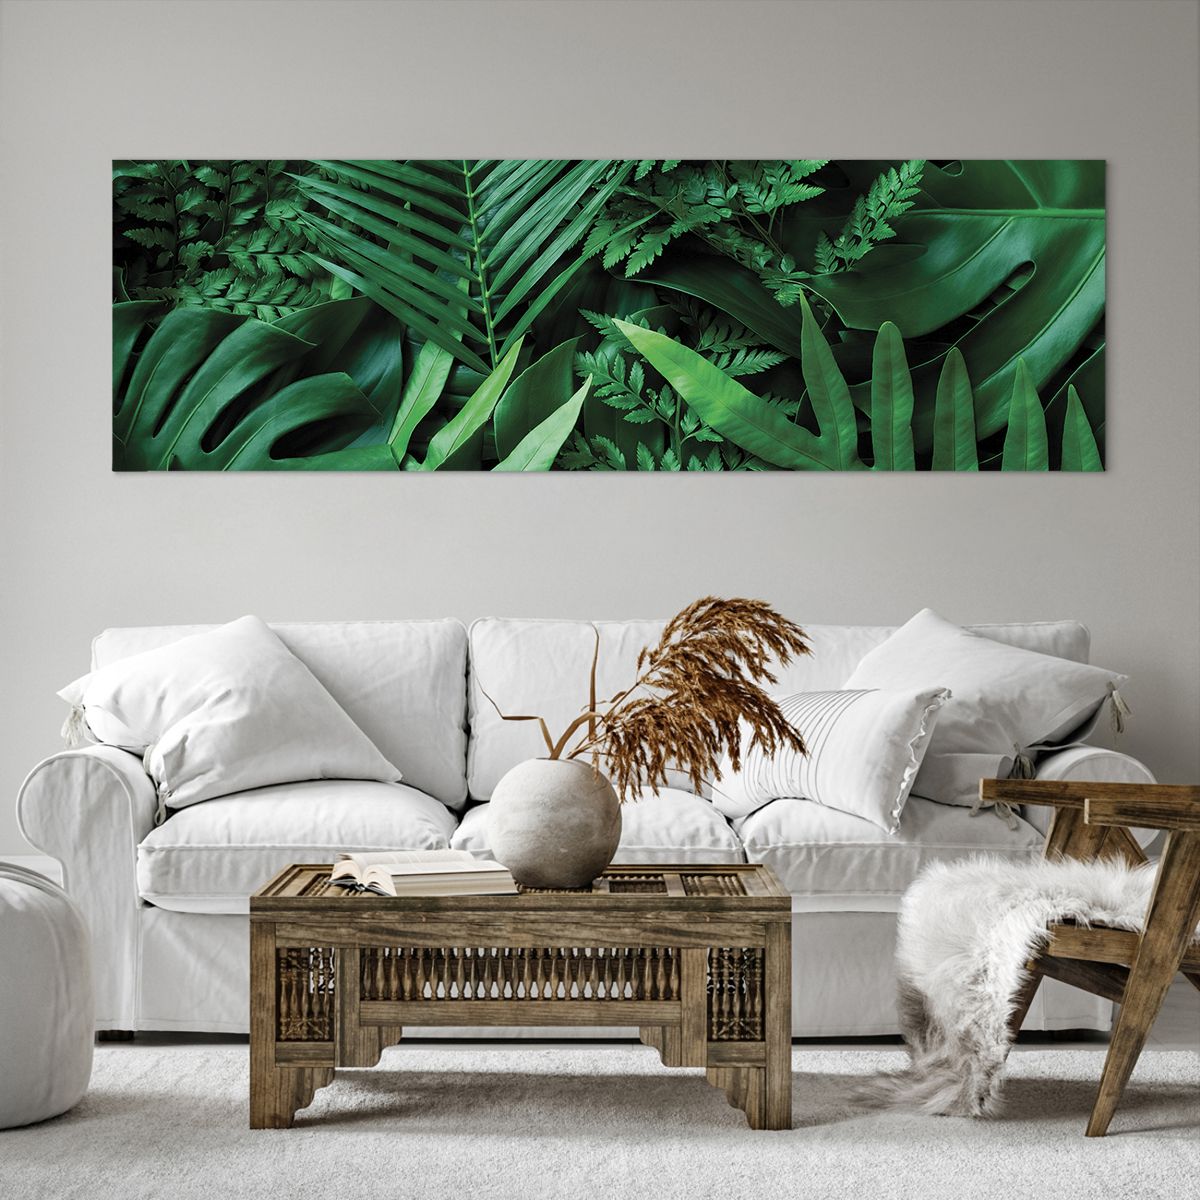 Bild auf Leinwand Exotische Pflanze, Bild auf Leinwand Palmblatt, Bild auf Leinwand Monstera-Blatt, Bild auf Leinwand Natur, Bild auf Leinwand Tropen